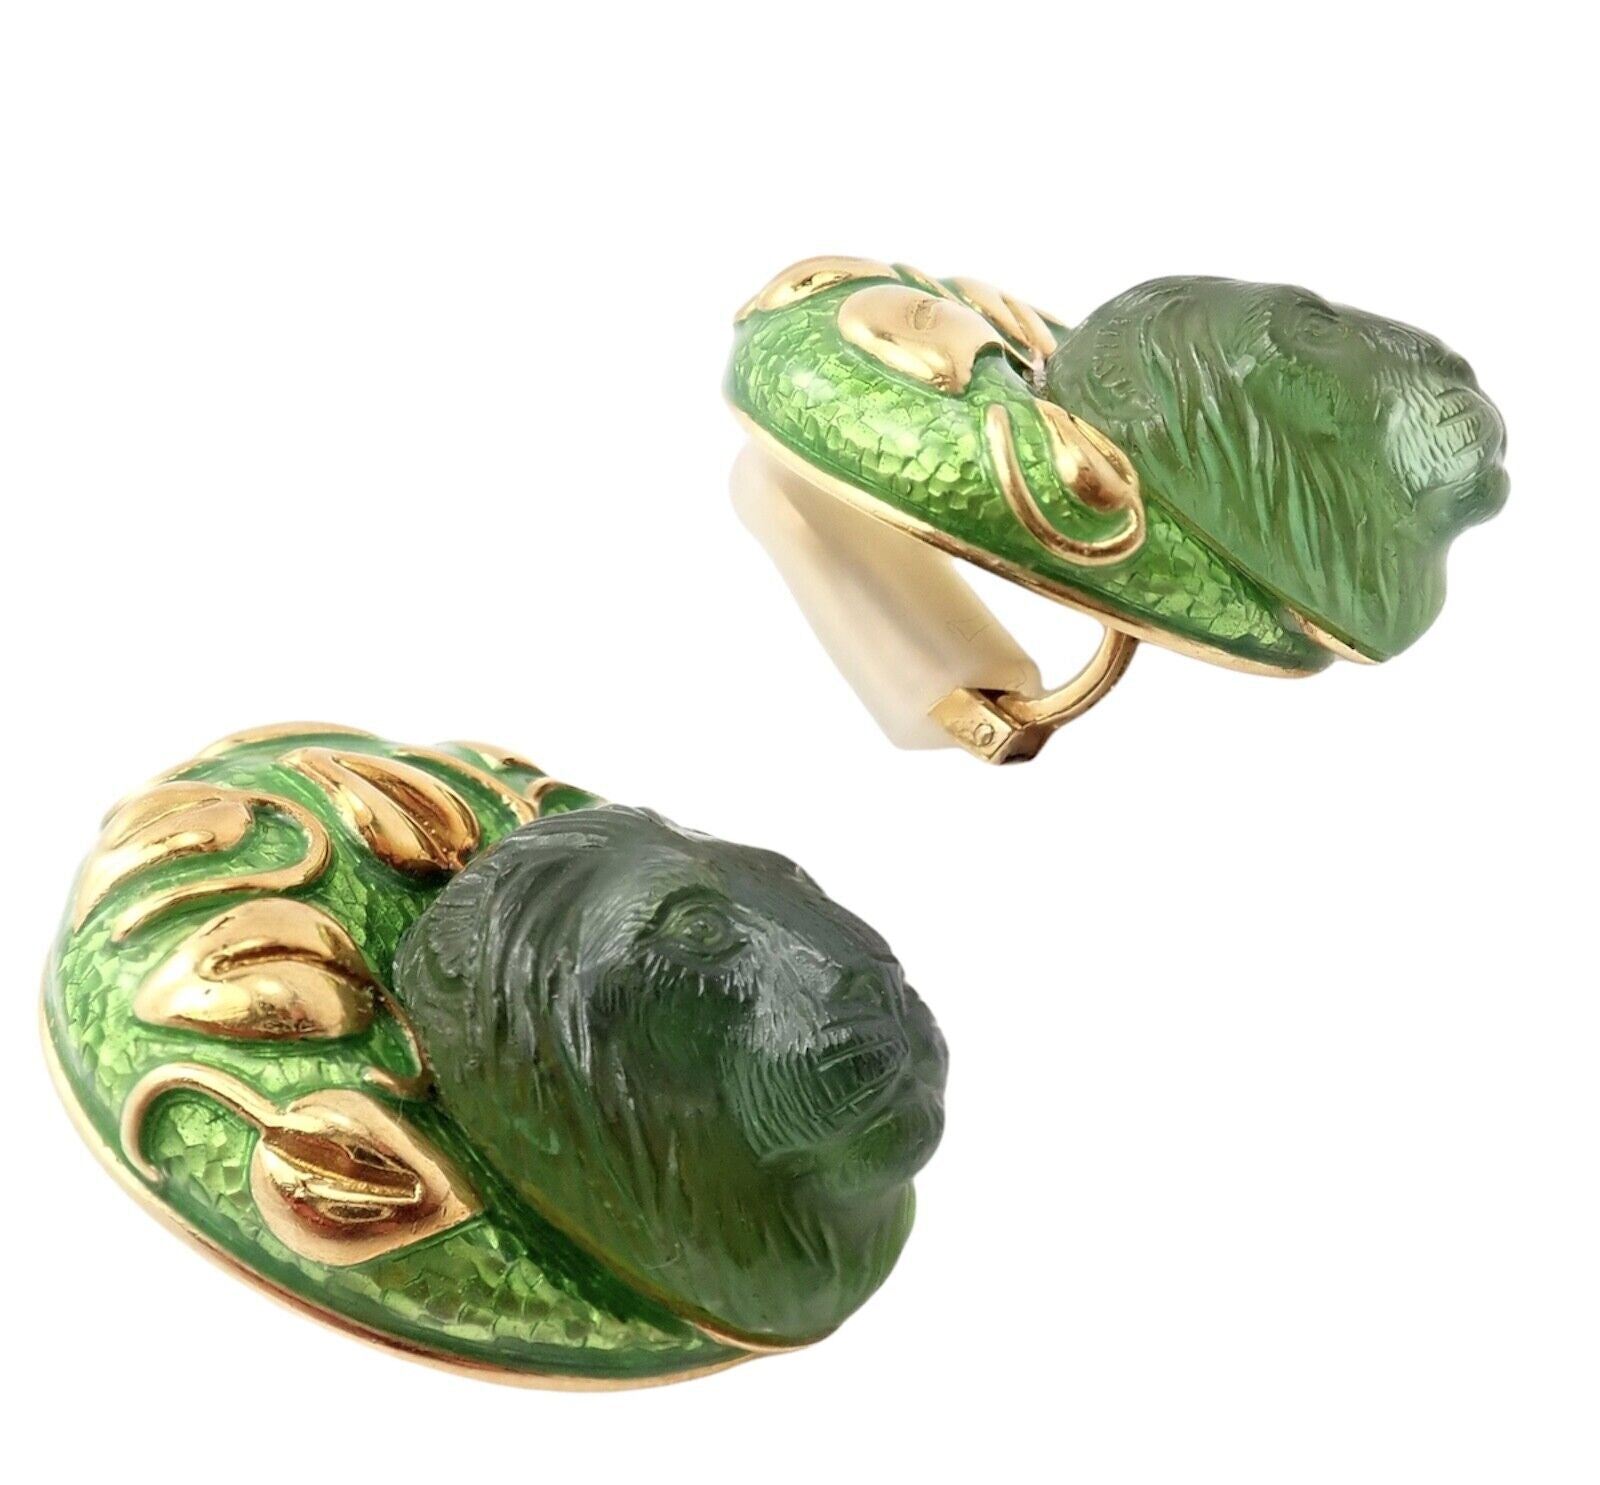 Elizabeth Gage Jewelry & Watches:Fine Jewelry:Earrings Elizabeth Gage 18k Yellow Gold Carved Green Tourmaline Enamel Lion Earrings